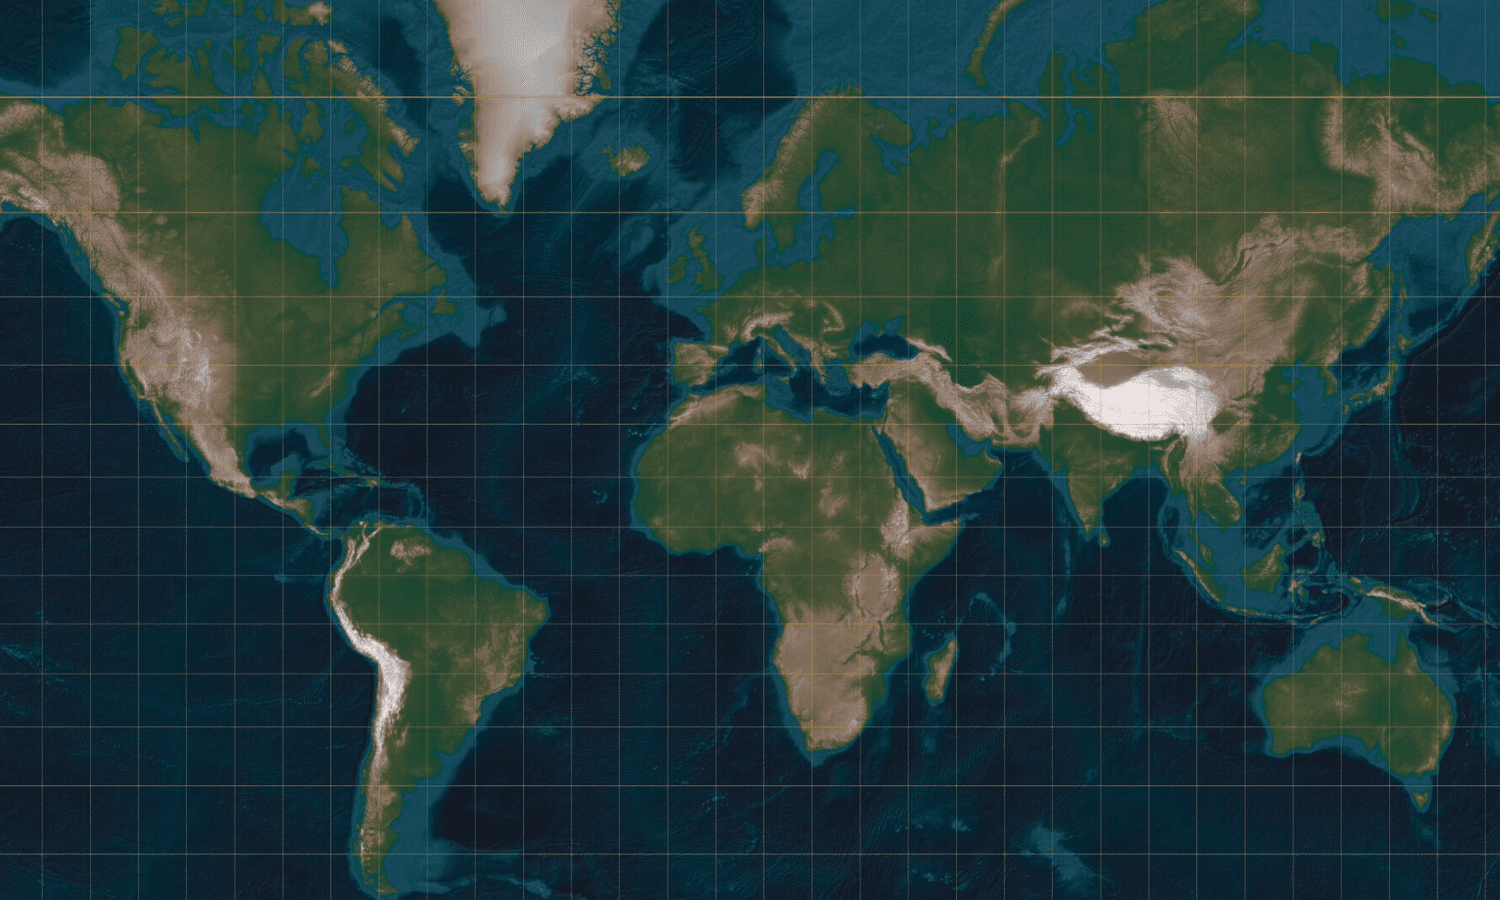 Mapa del Mundo - Mapamundi - Gall-Peters